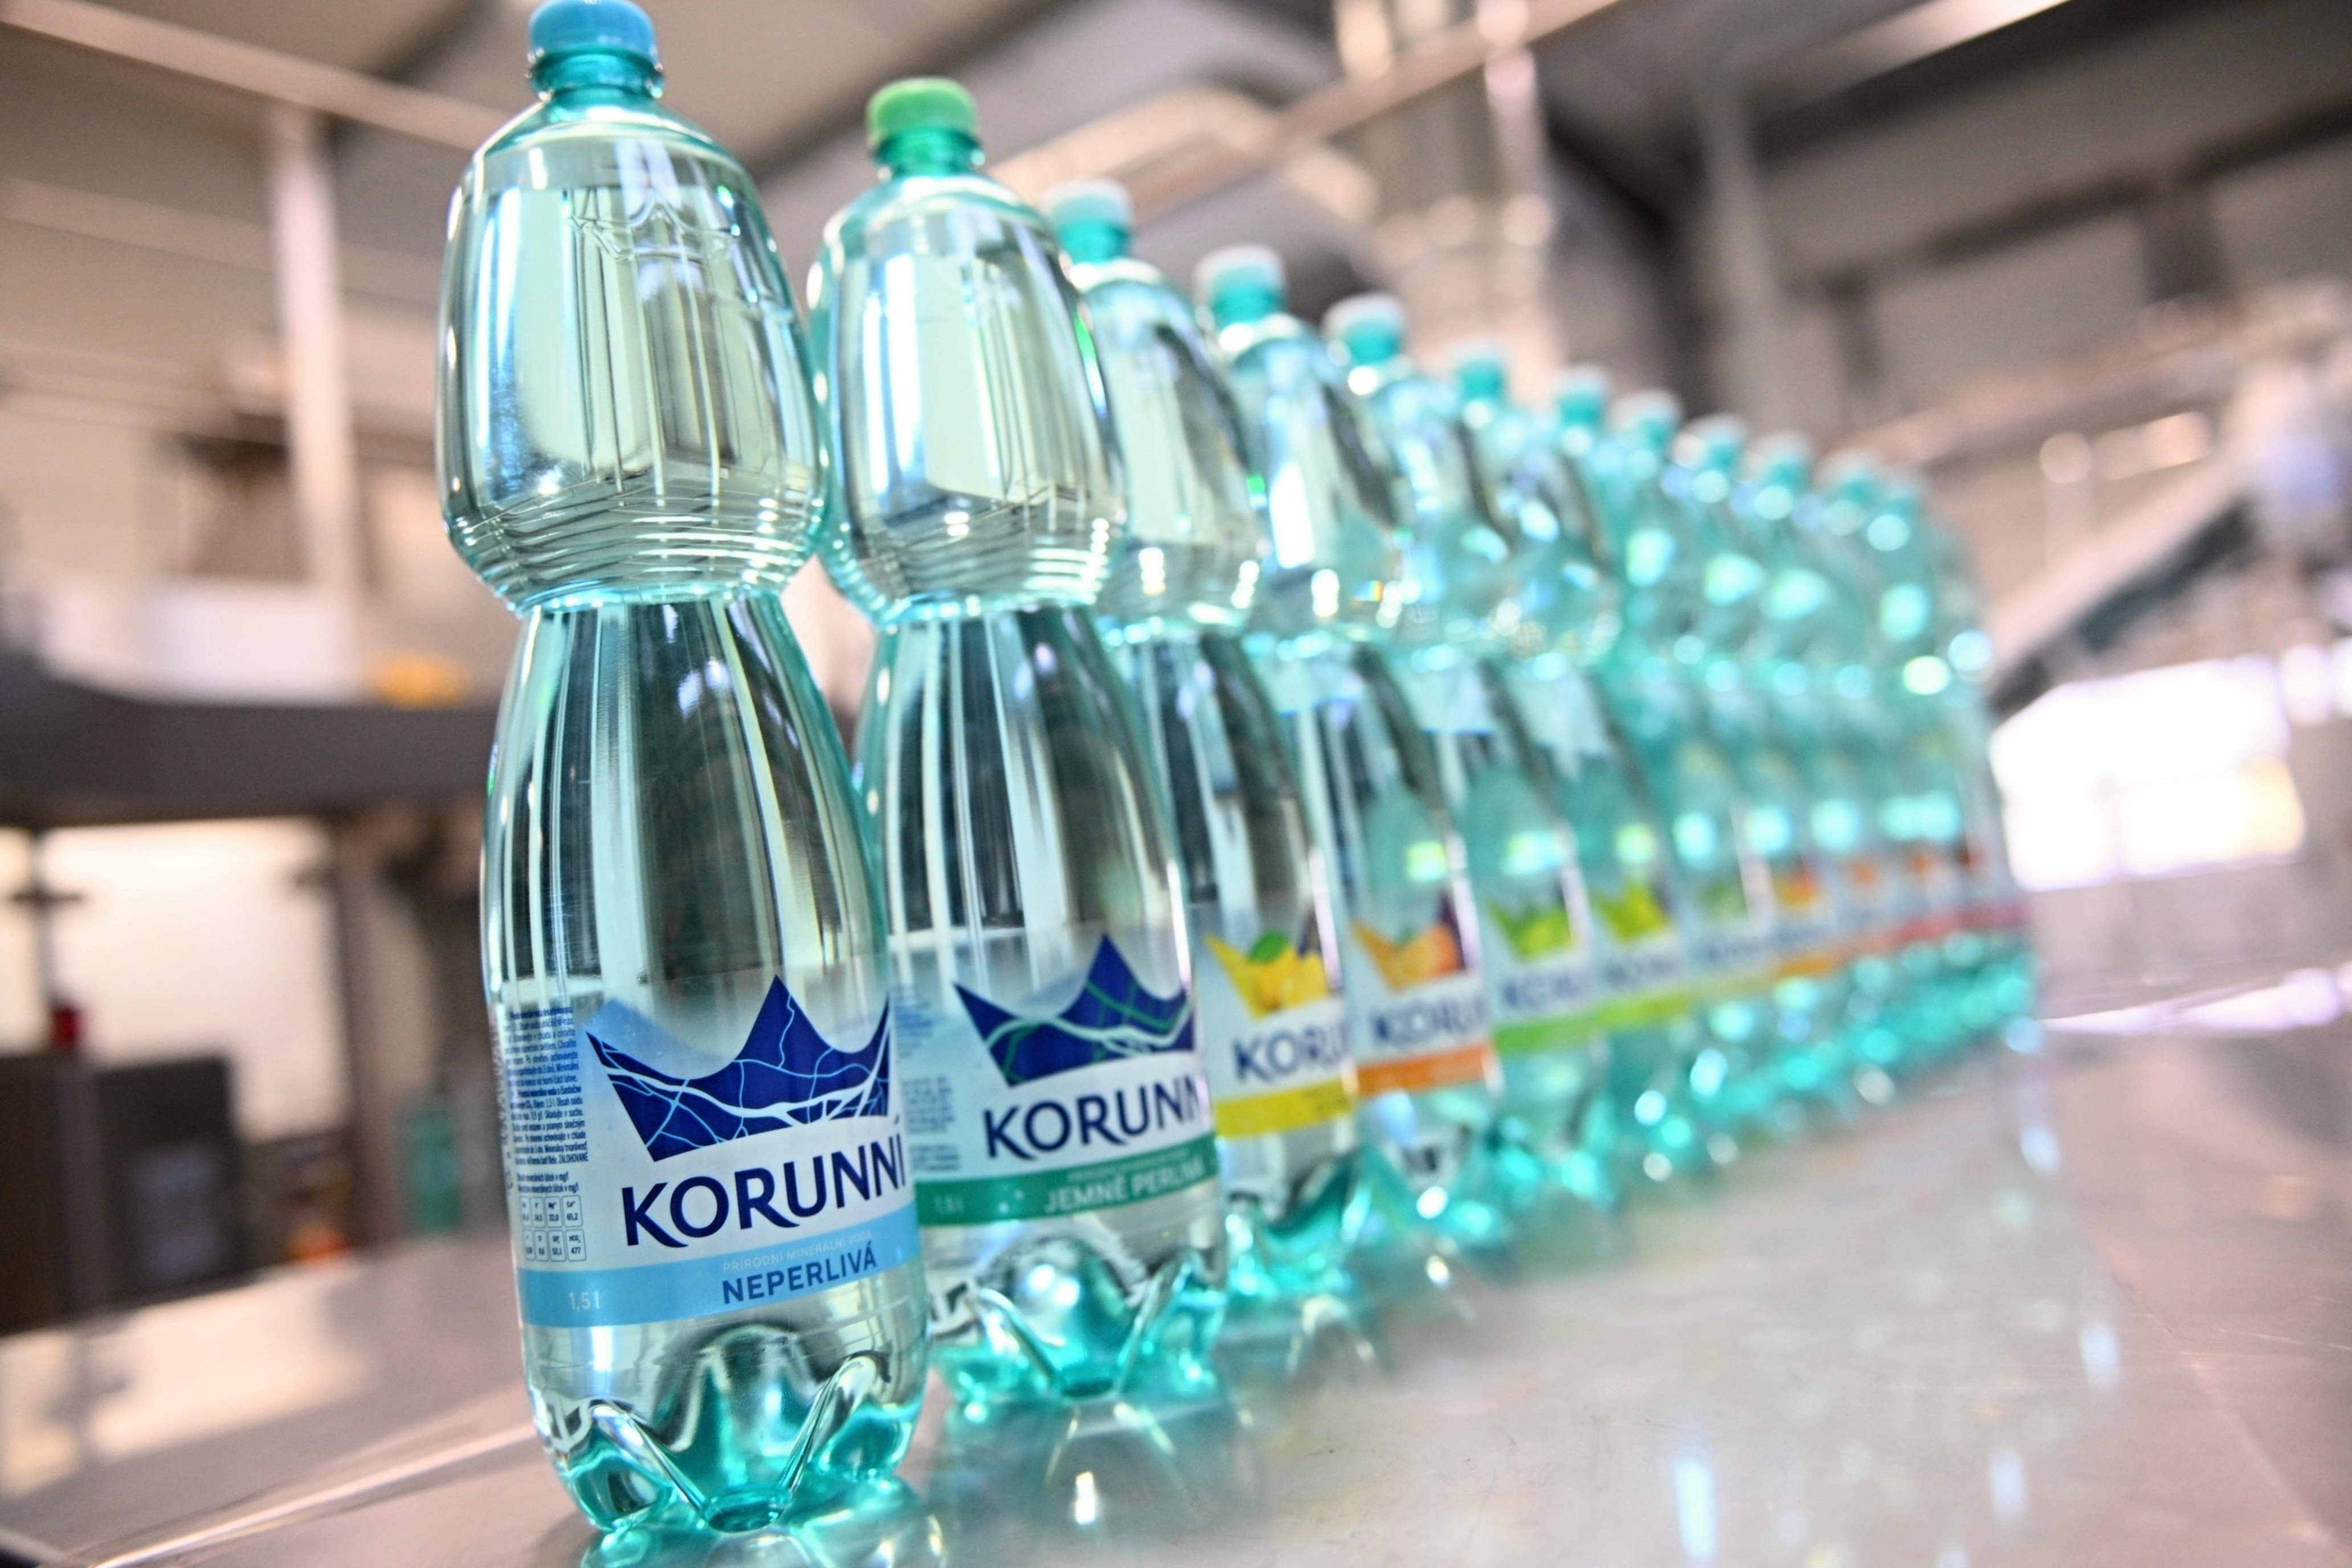 Kofola investuje do minerální vody Korunní. Uvedla do provozu novou výrobní linku a její lahve prošly proměnou